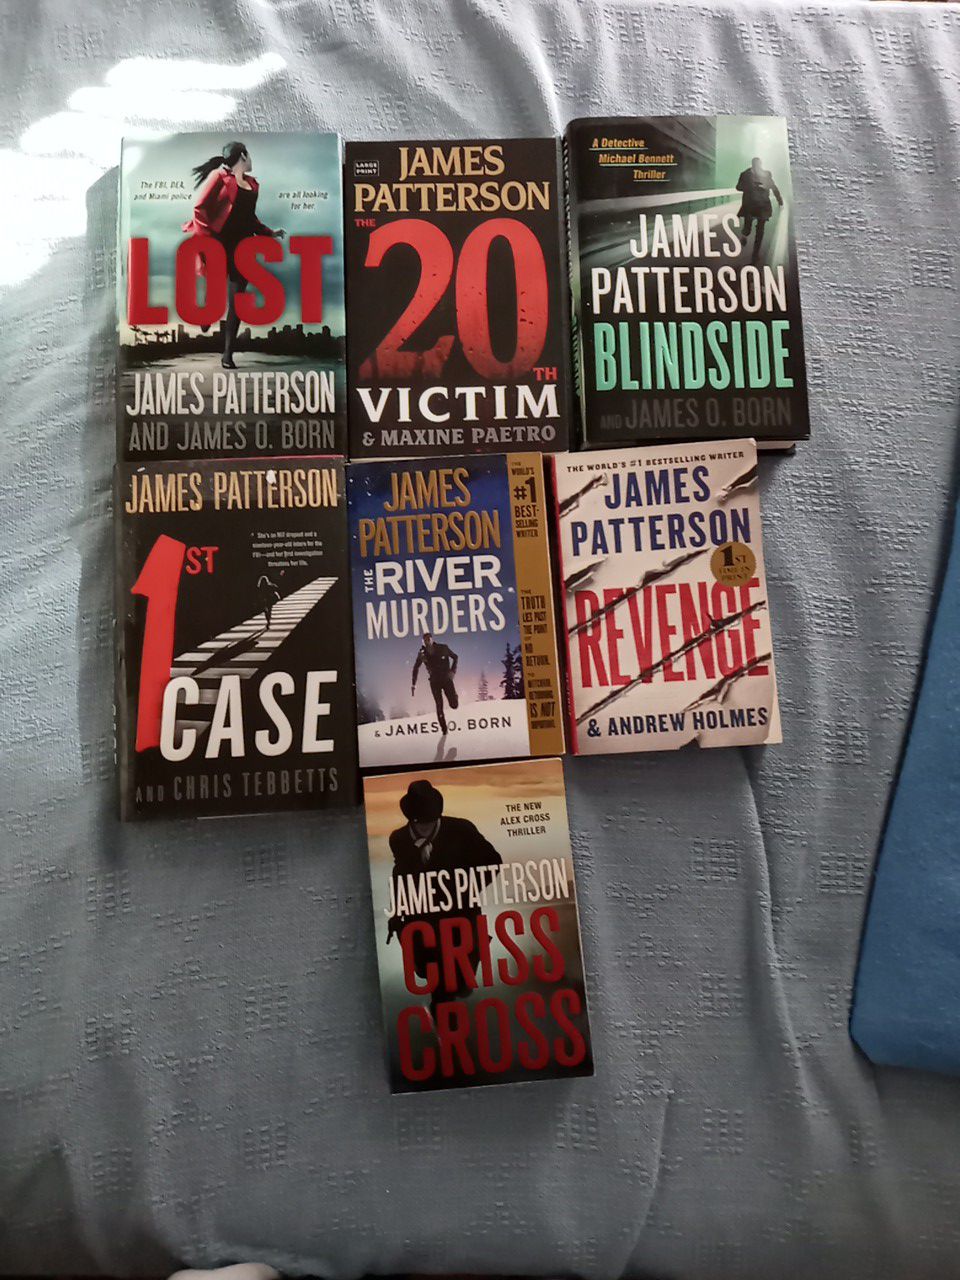 James Patterson books.